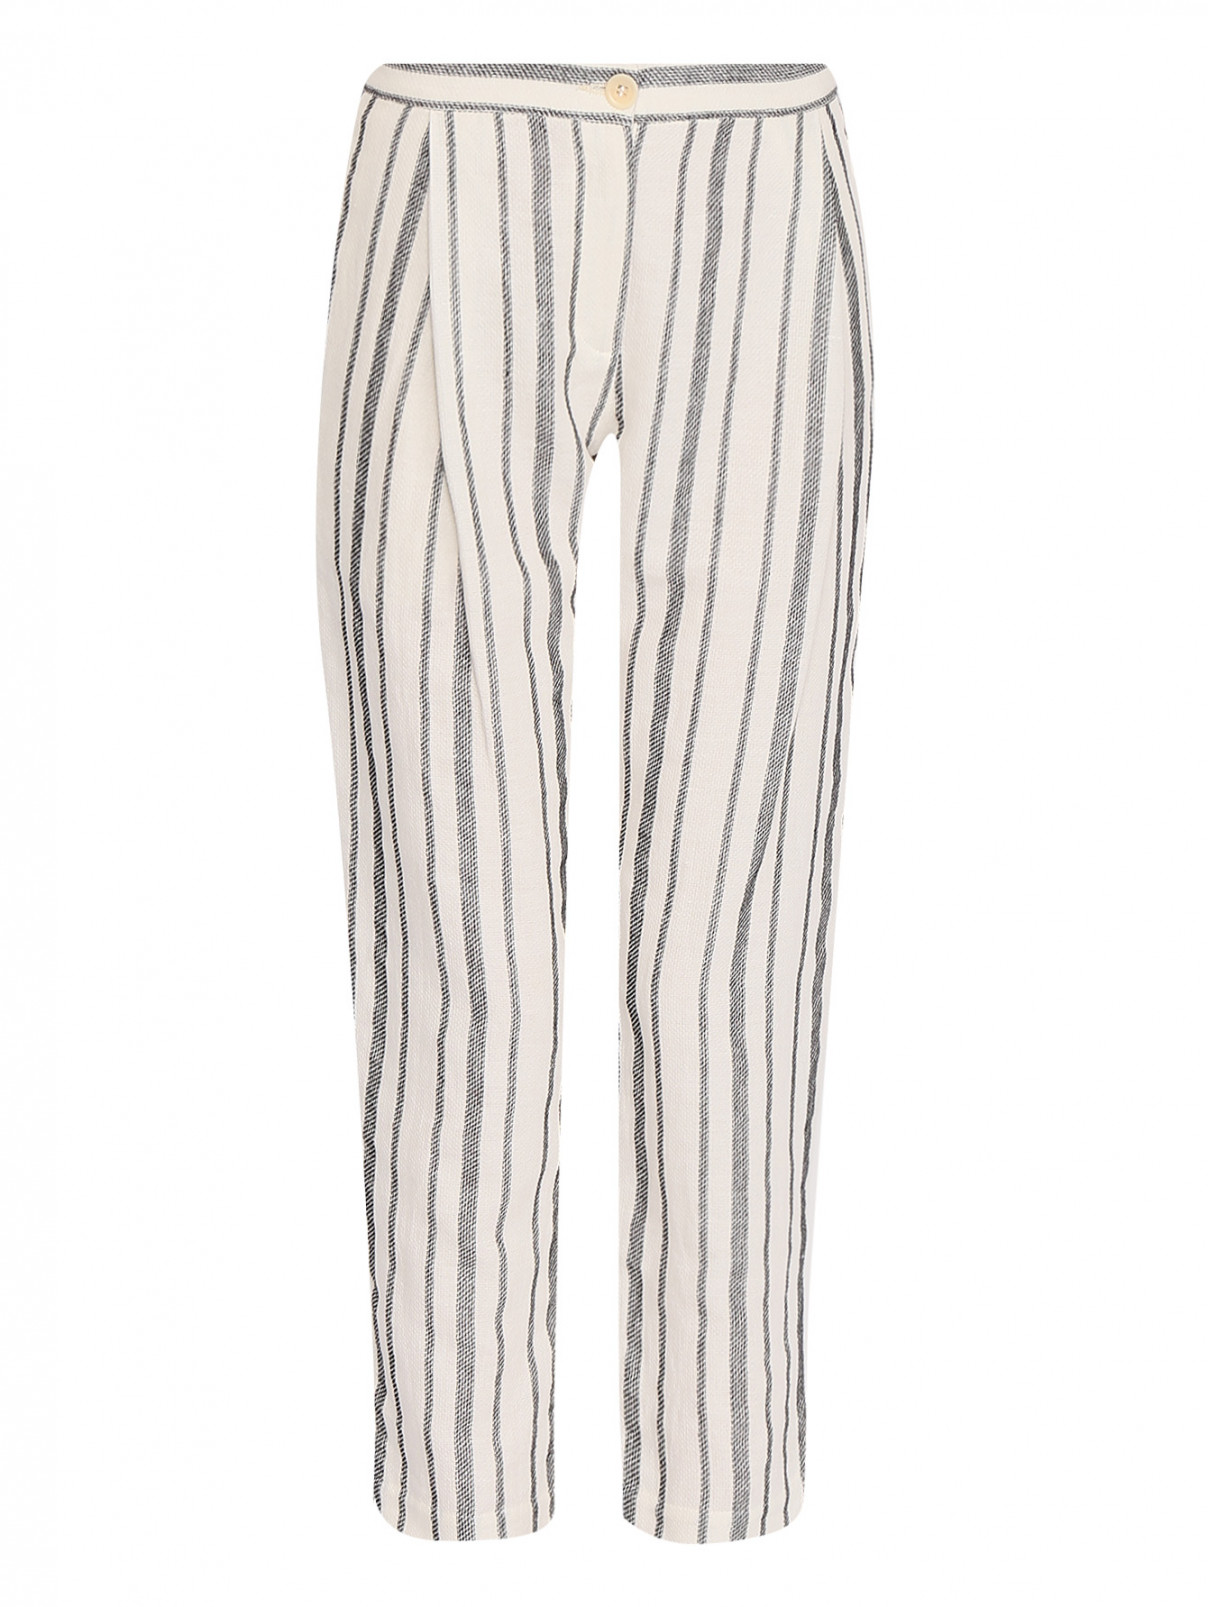 Укороченные брюки из хлопка и льна с узором полоска PennyBlack  –  Общий вид  – Цвет:  Белый